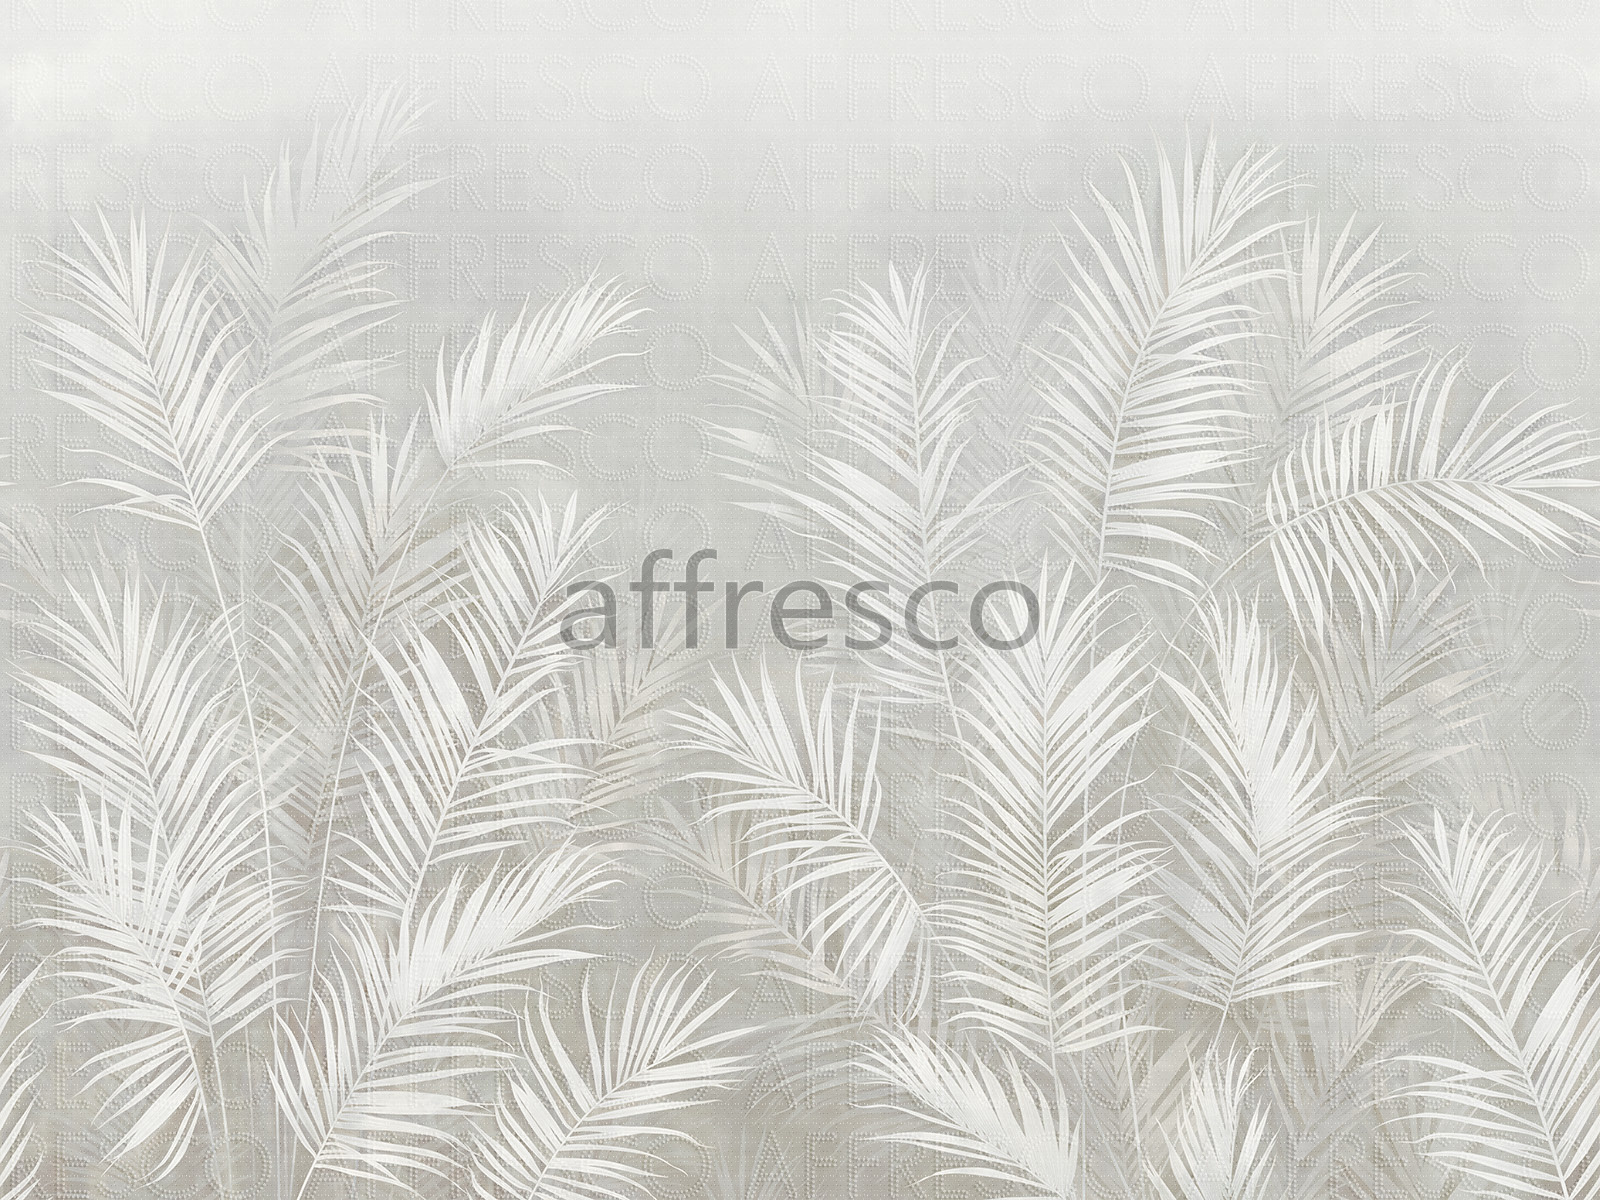 AF2114-COL4 | Line Art | Affresco Factory